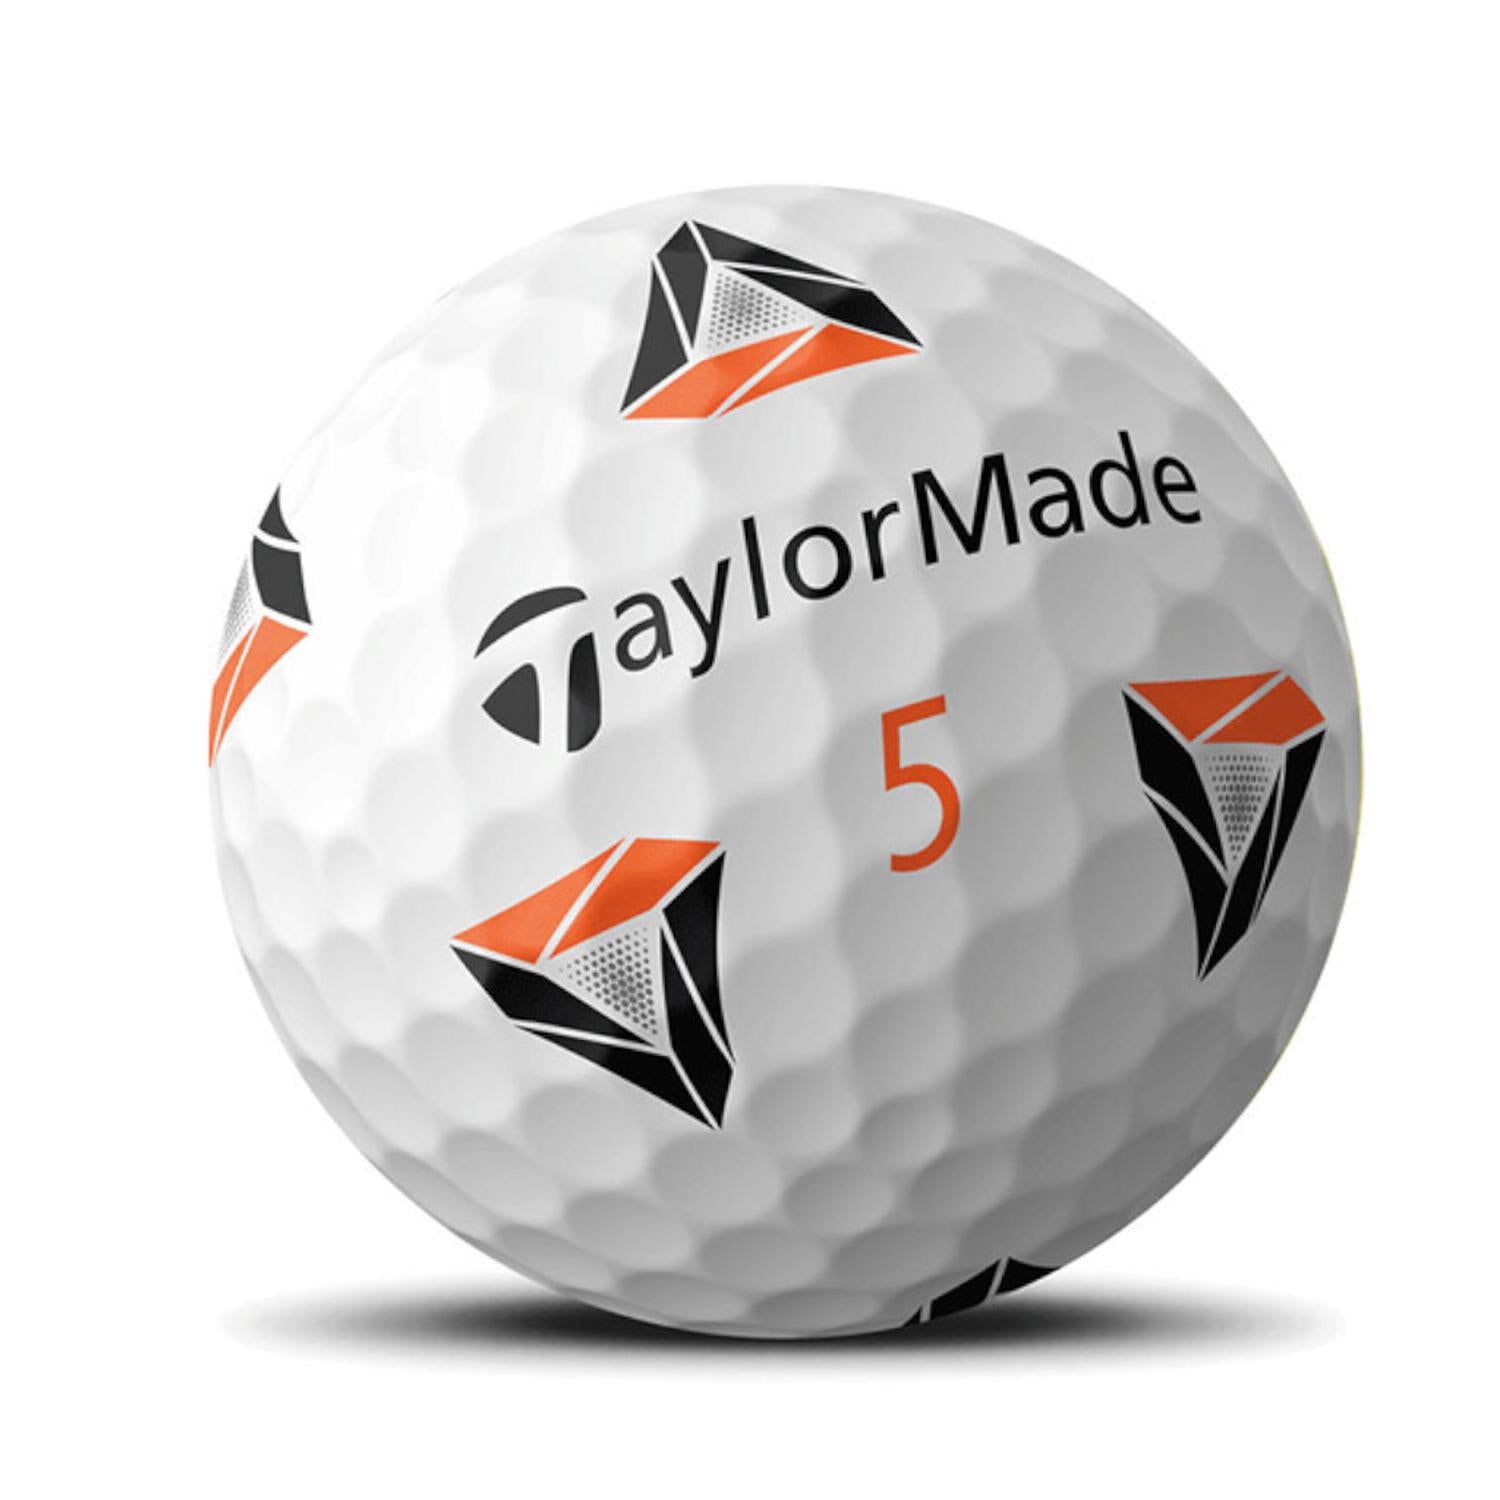 Taylormade TP5x Pix 3.0